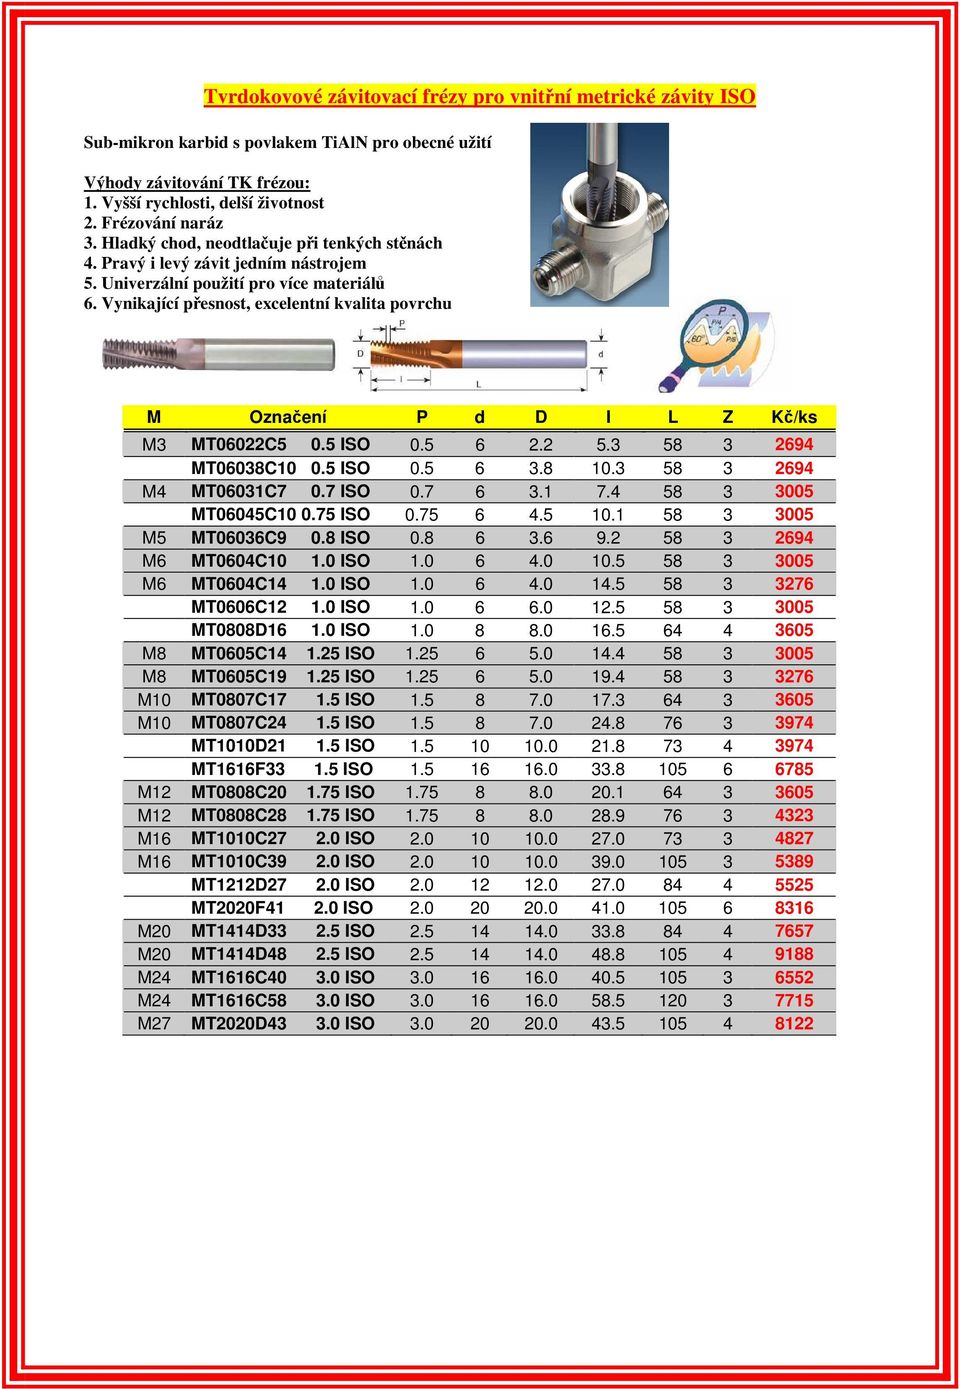 Vynikající přesnost, excelentní kvalita povrchu M Označení P d D I L Z Kč/ks M3 MT06022C5 0.5 ISO 0.5 6 2.2 5.3 58 3 2694 MT06038C10 0.5 ISO 0.5 6 3.8 10.3 58 3 2694 M4 MT06031C7 0.7 ISO 0.7 6 3.1 7.